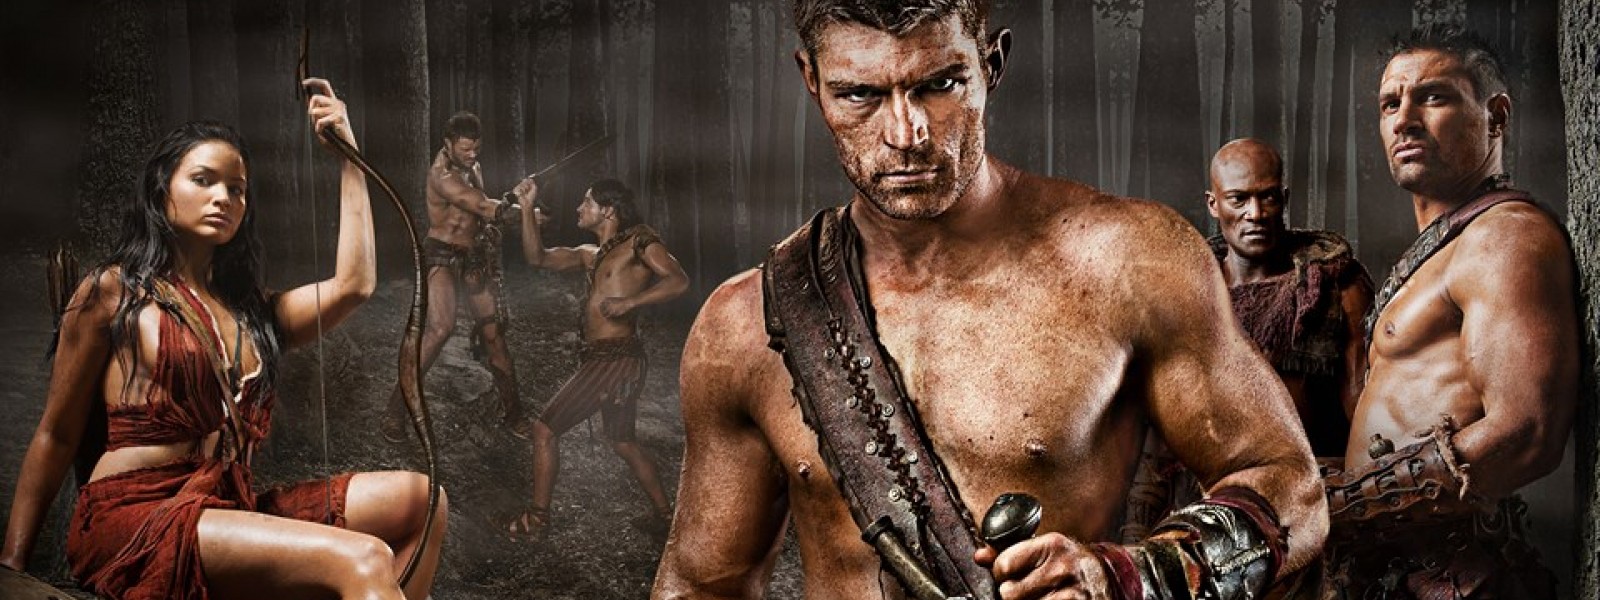 Spartacus showcase